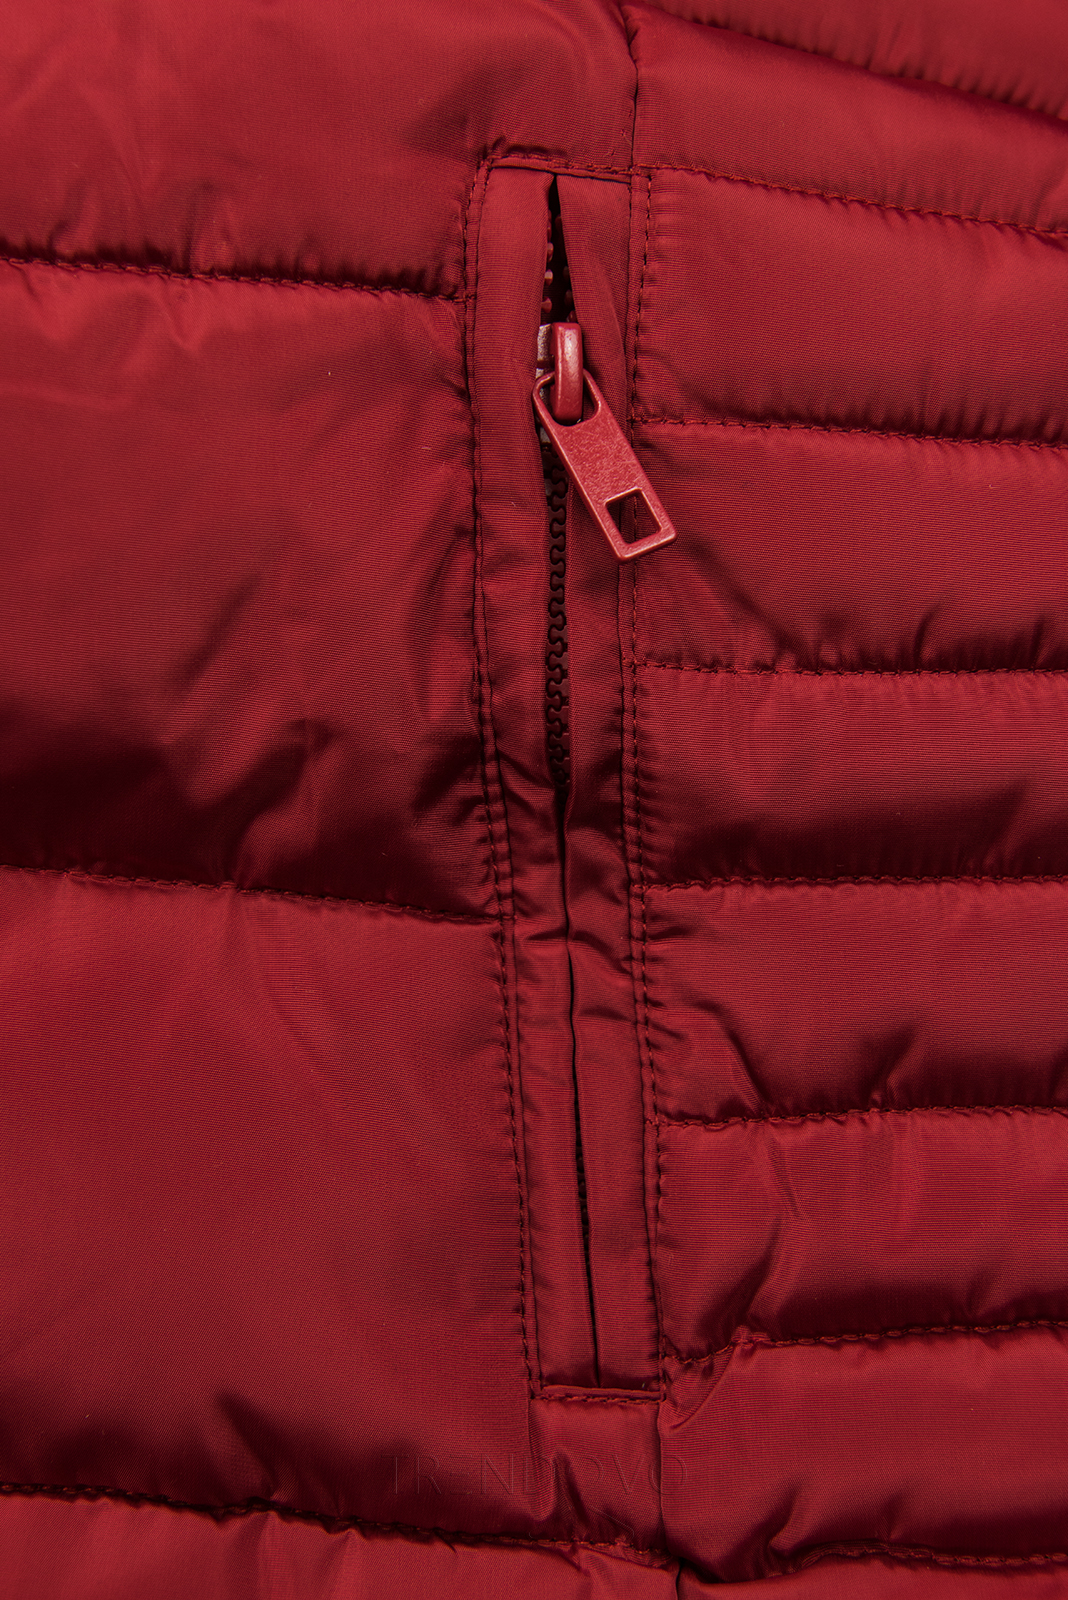 Tmavočervená prešívaná zimná bunda